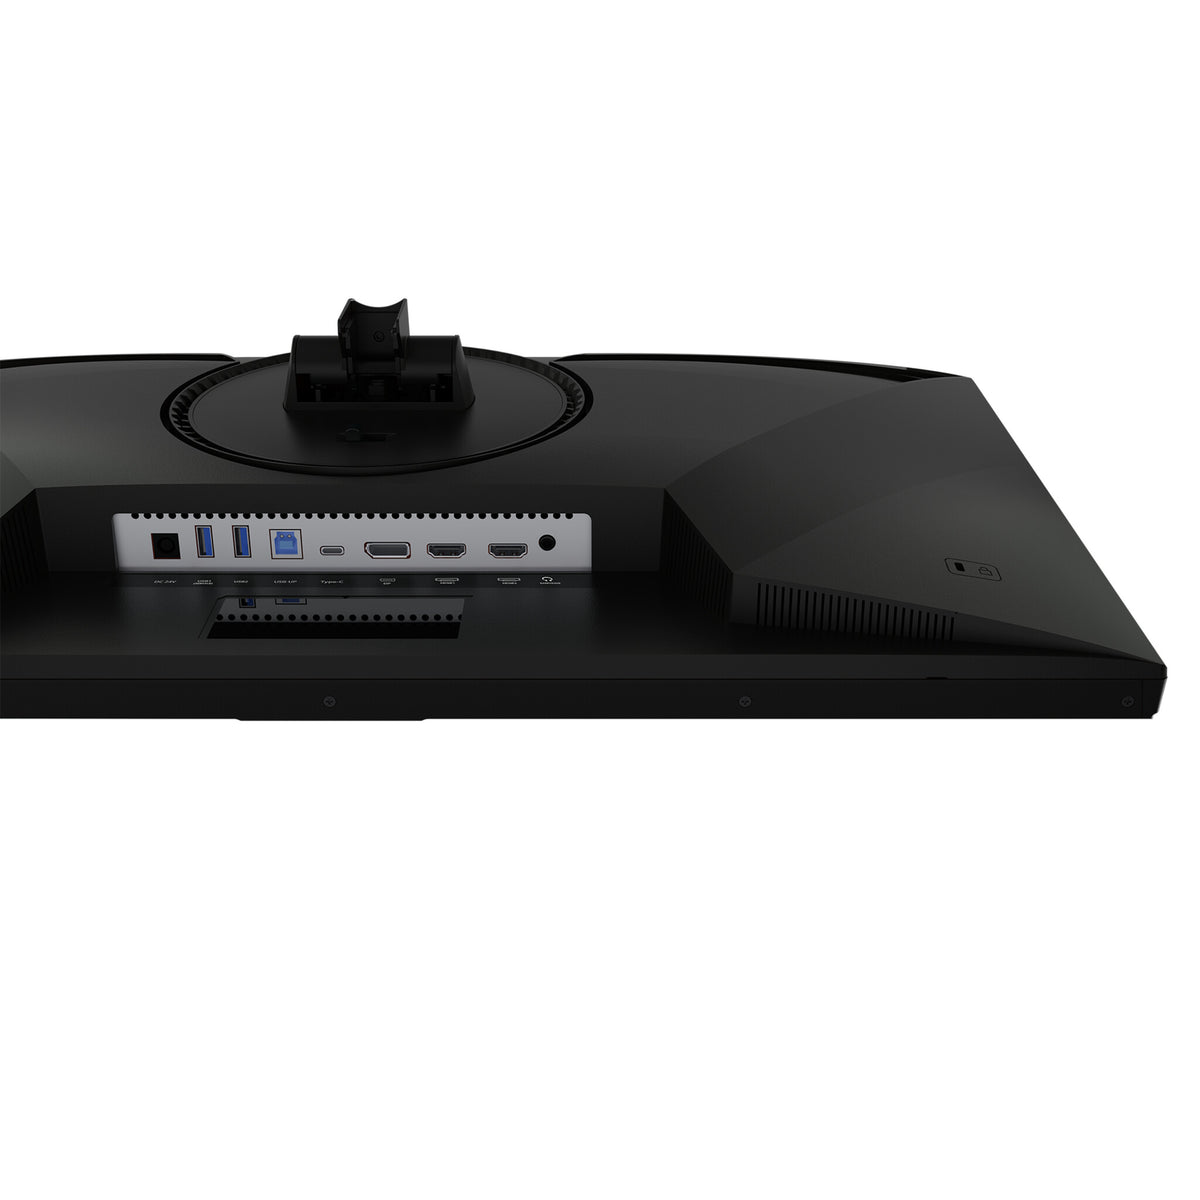 Cooler Master Gaming Tempest GP27U - 68.6 cm (27&quot;) - 3840 x 2160 pixels 4K Ultra HD Monitor